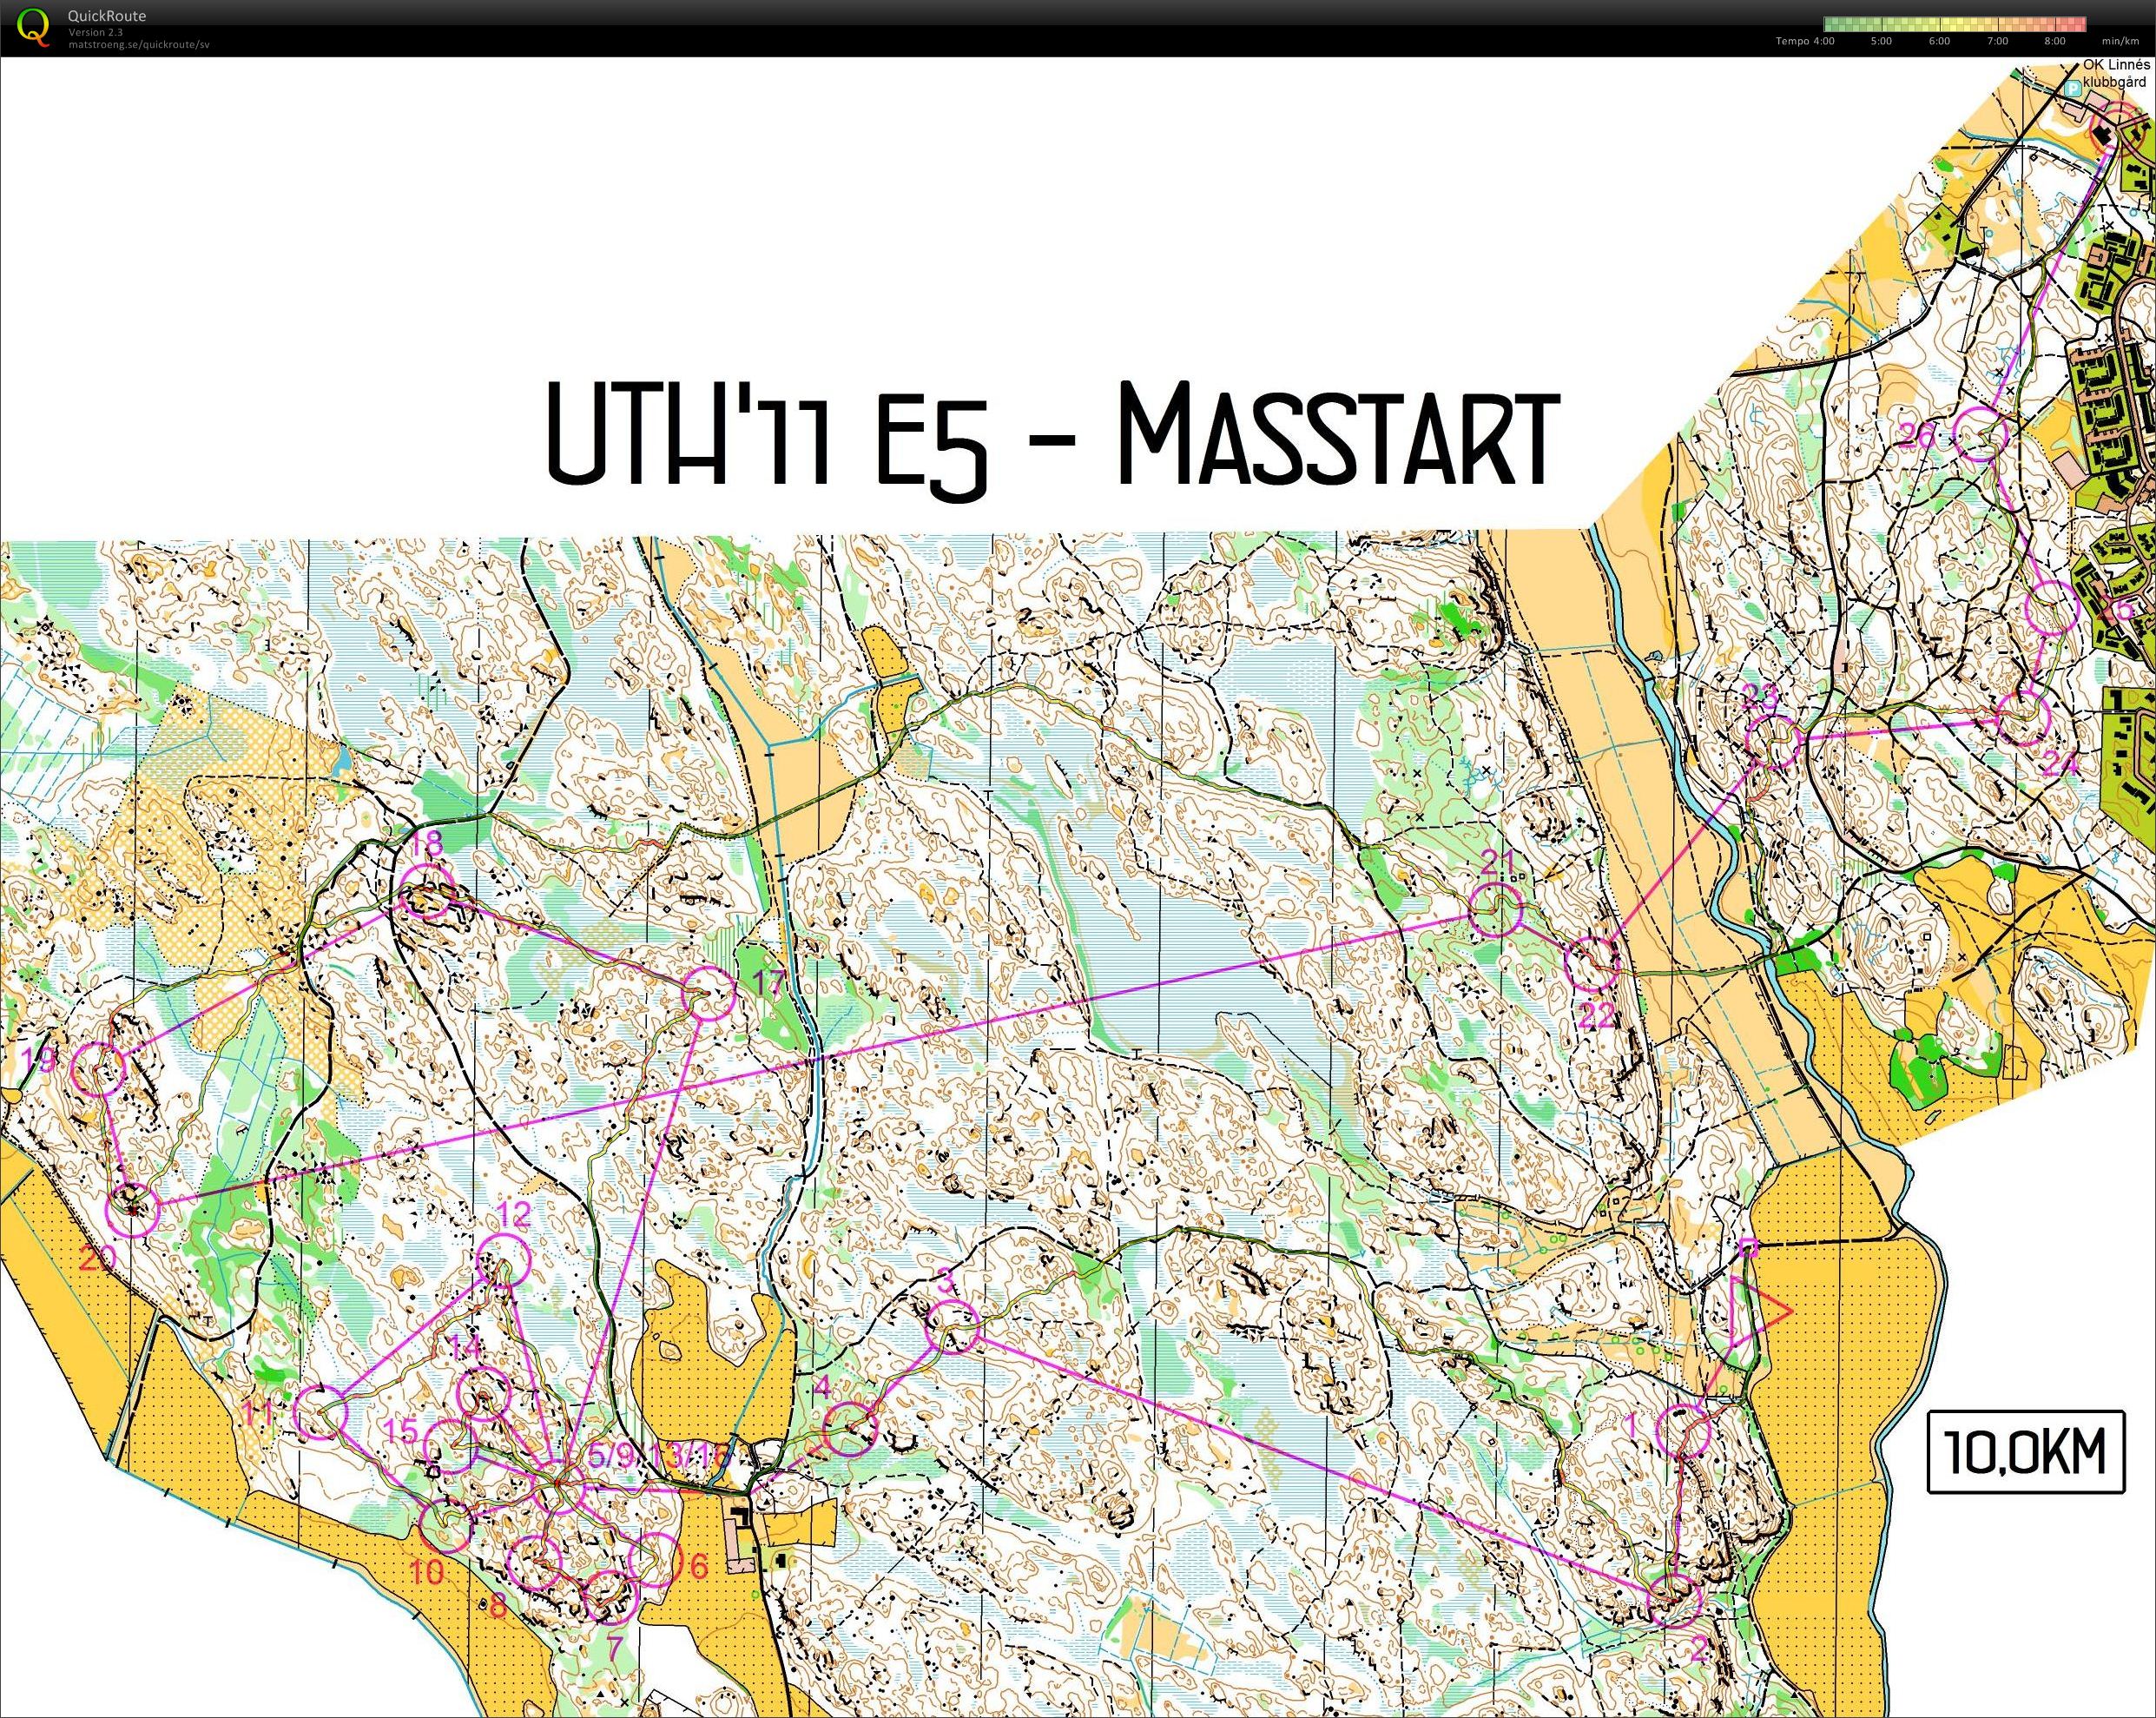 UTH E5 Masstart (11/12/2011)